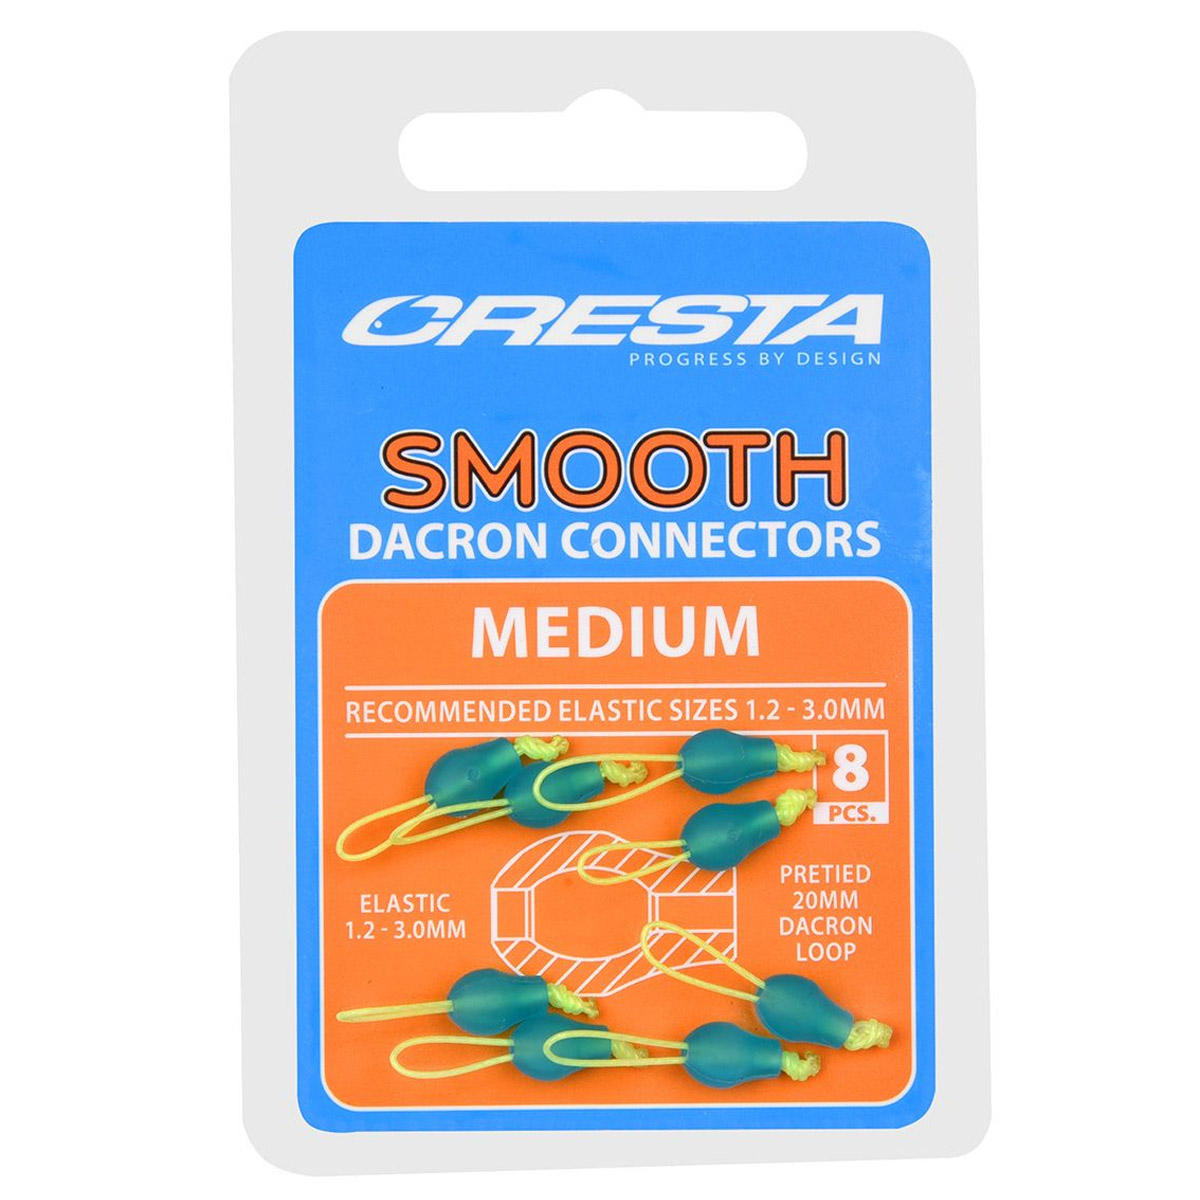 Cresta Smooth Dacron Connectors -  Medium